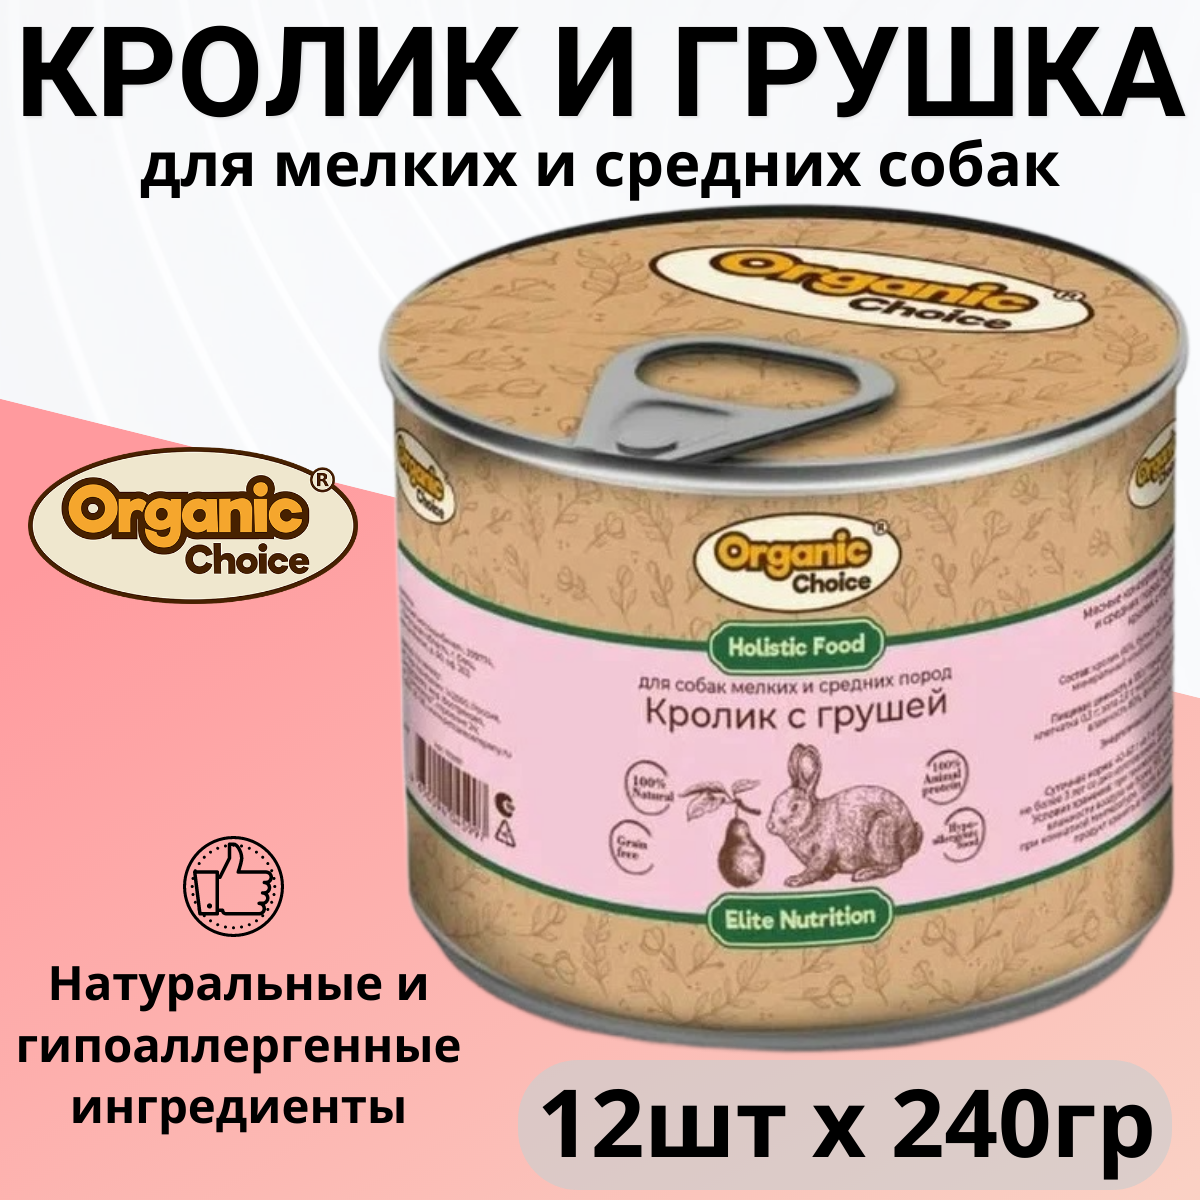 Organic Сhoice влажный корм для собак малых и средних пород, кролик с грушей (12шт в уп) 240 гр